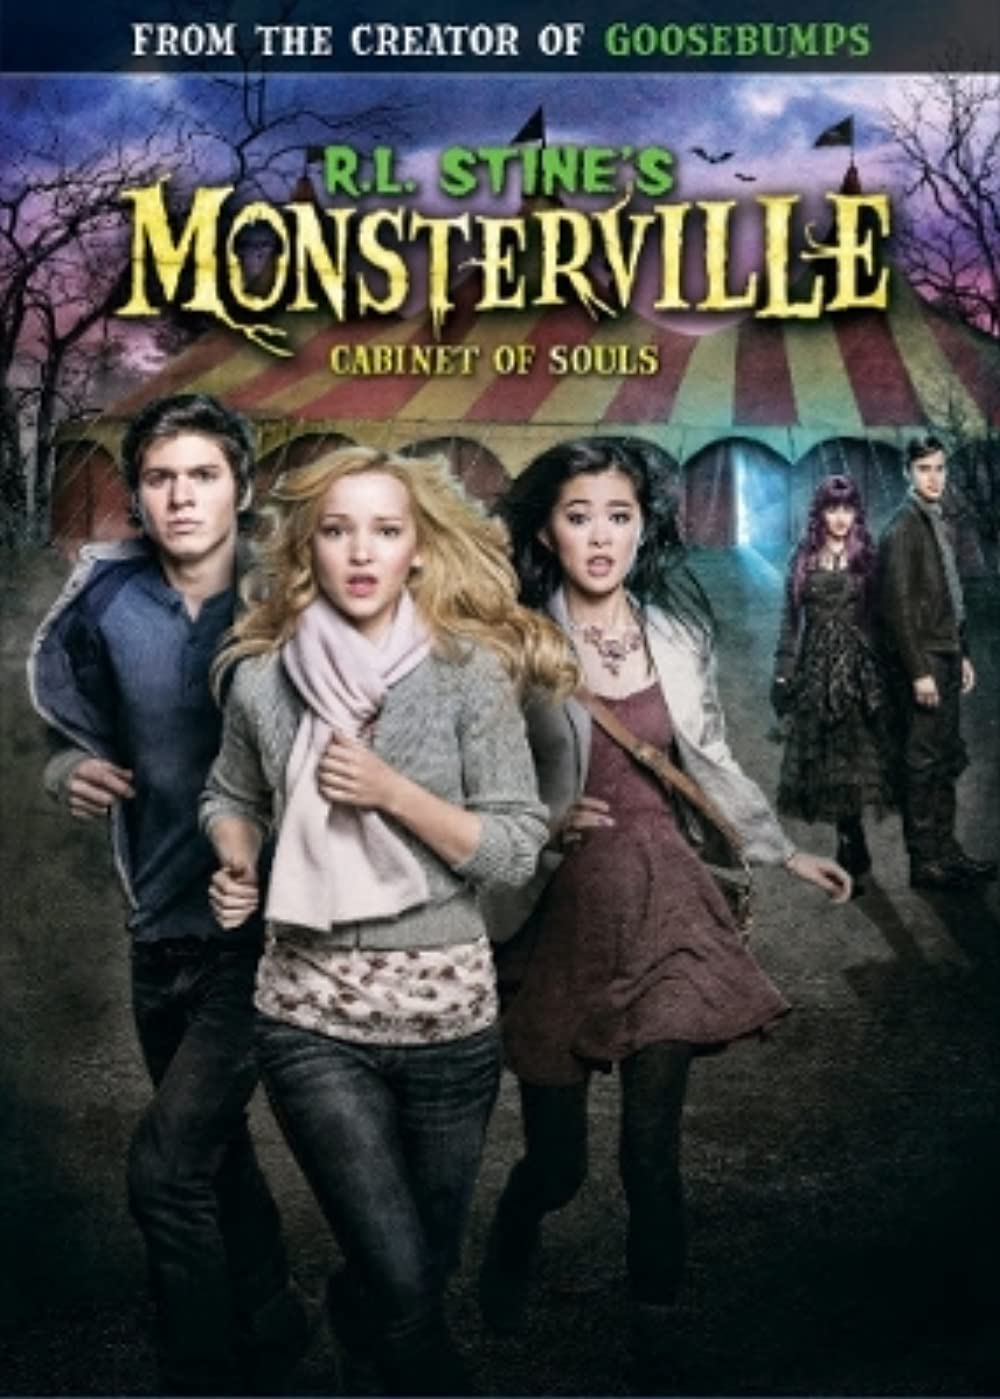 ดูหนัง R.L. Stines Monsterville Cabinet of Souls (2015) อาร์ แอล สไตน์: เมืองอสุรกาย ตอนตู้กักวิญญาณ [ซับไทย]